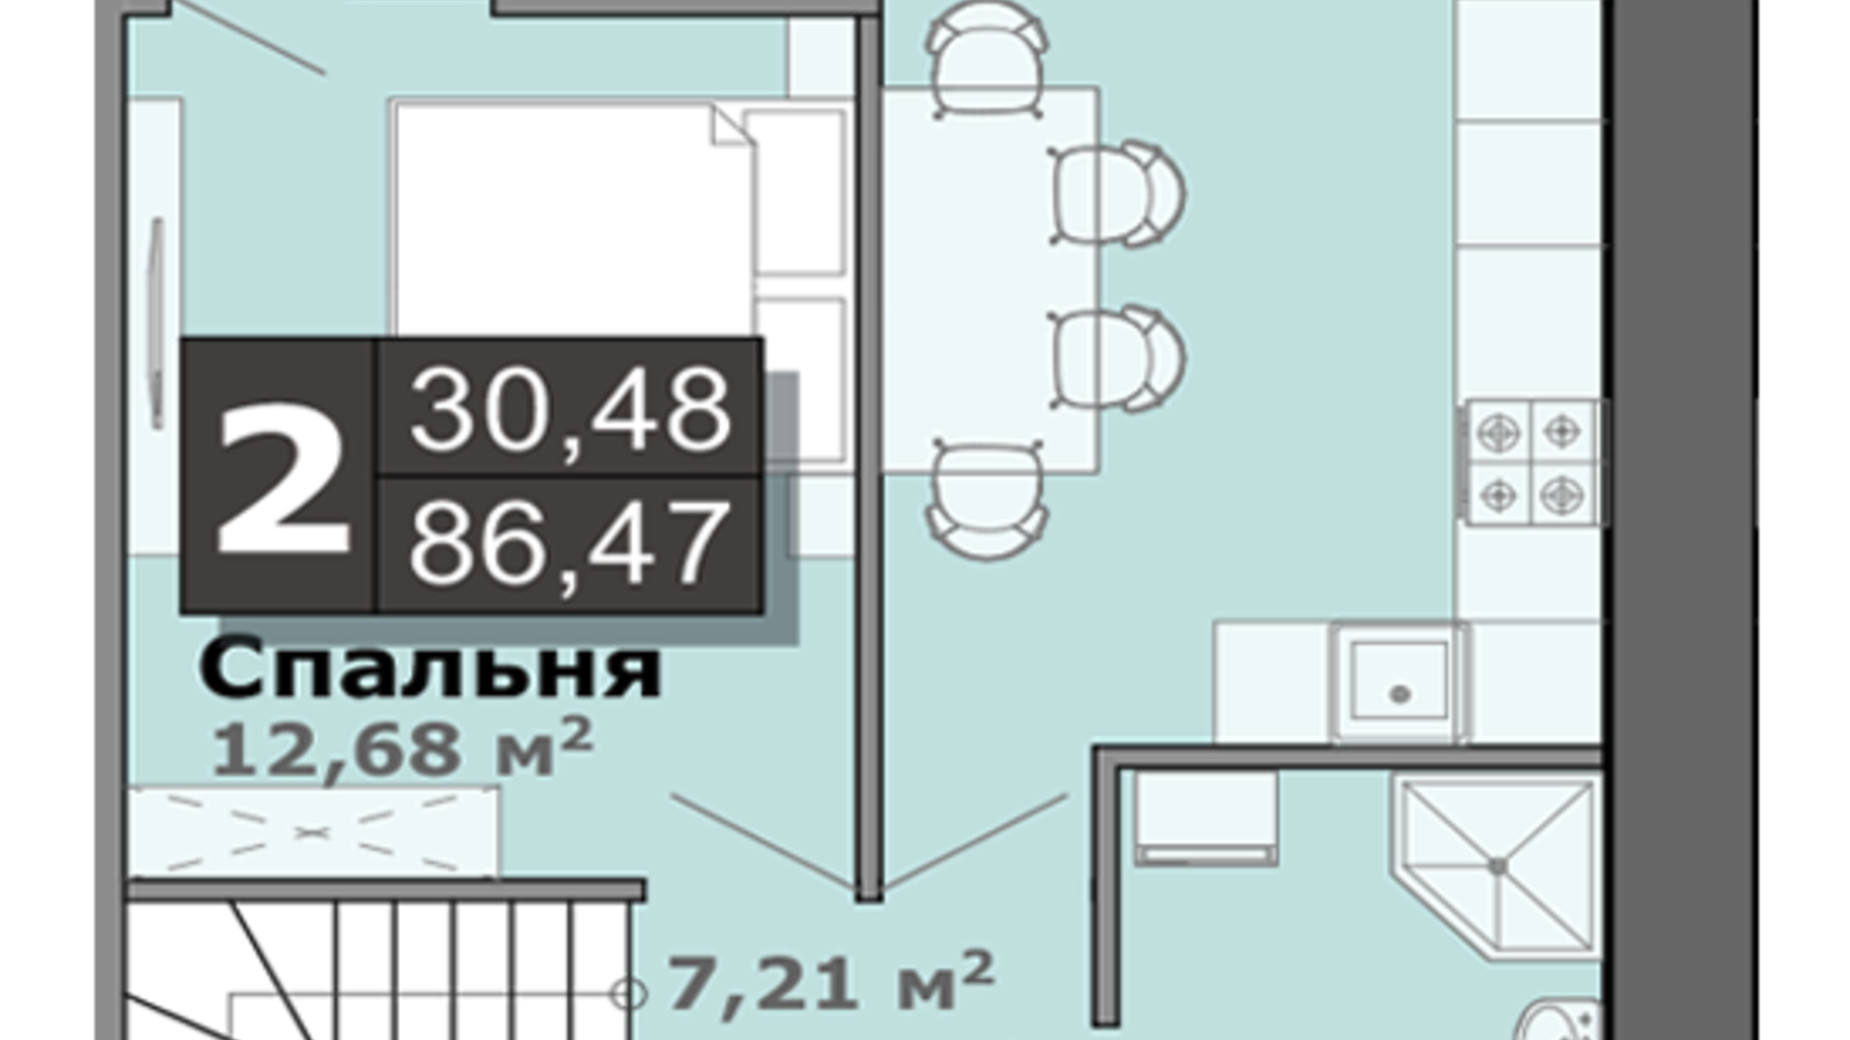 Планировка много­уровневой квартиры в ЖК Липы 86.47 м², фото 699344